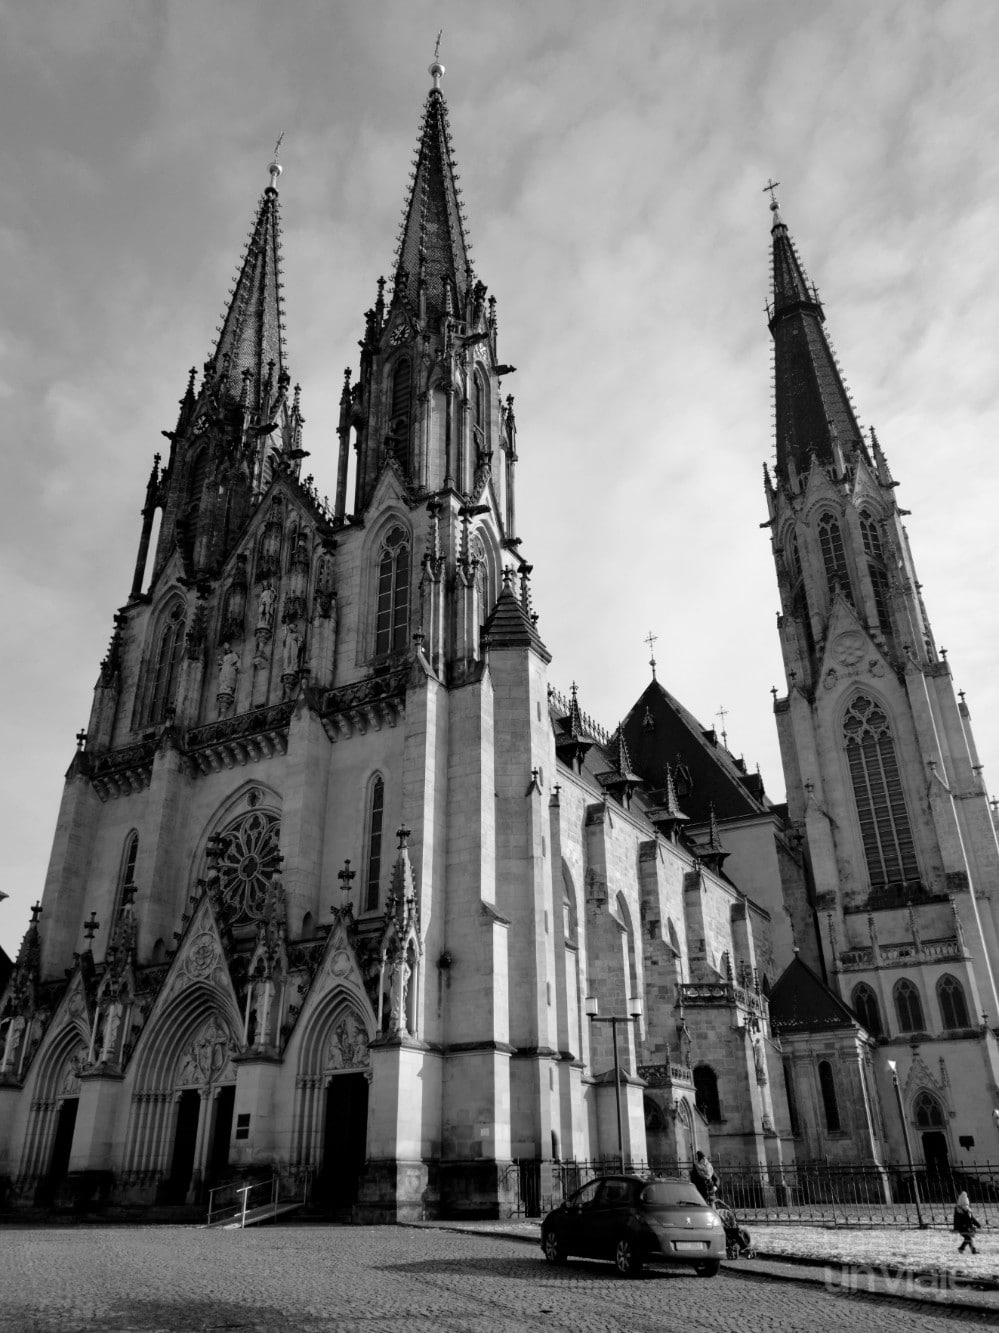 Historia y arte: Ruta gótico-barroca por República Checa